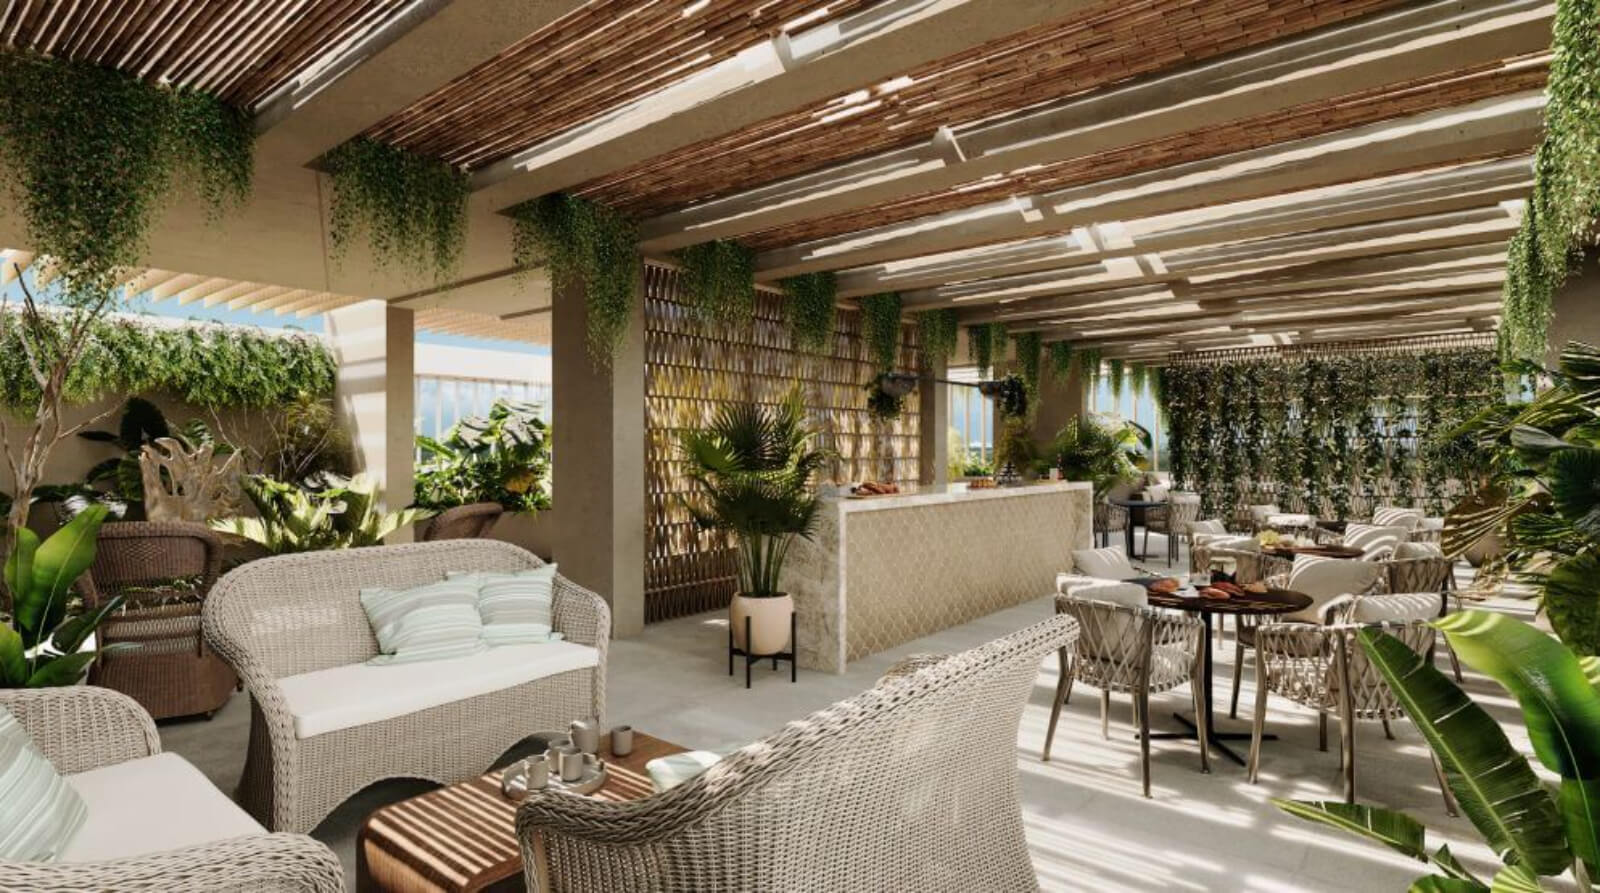 Departamento con terraza, jacuzzi, alberca con vista a la laguna, venta Cancun.